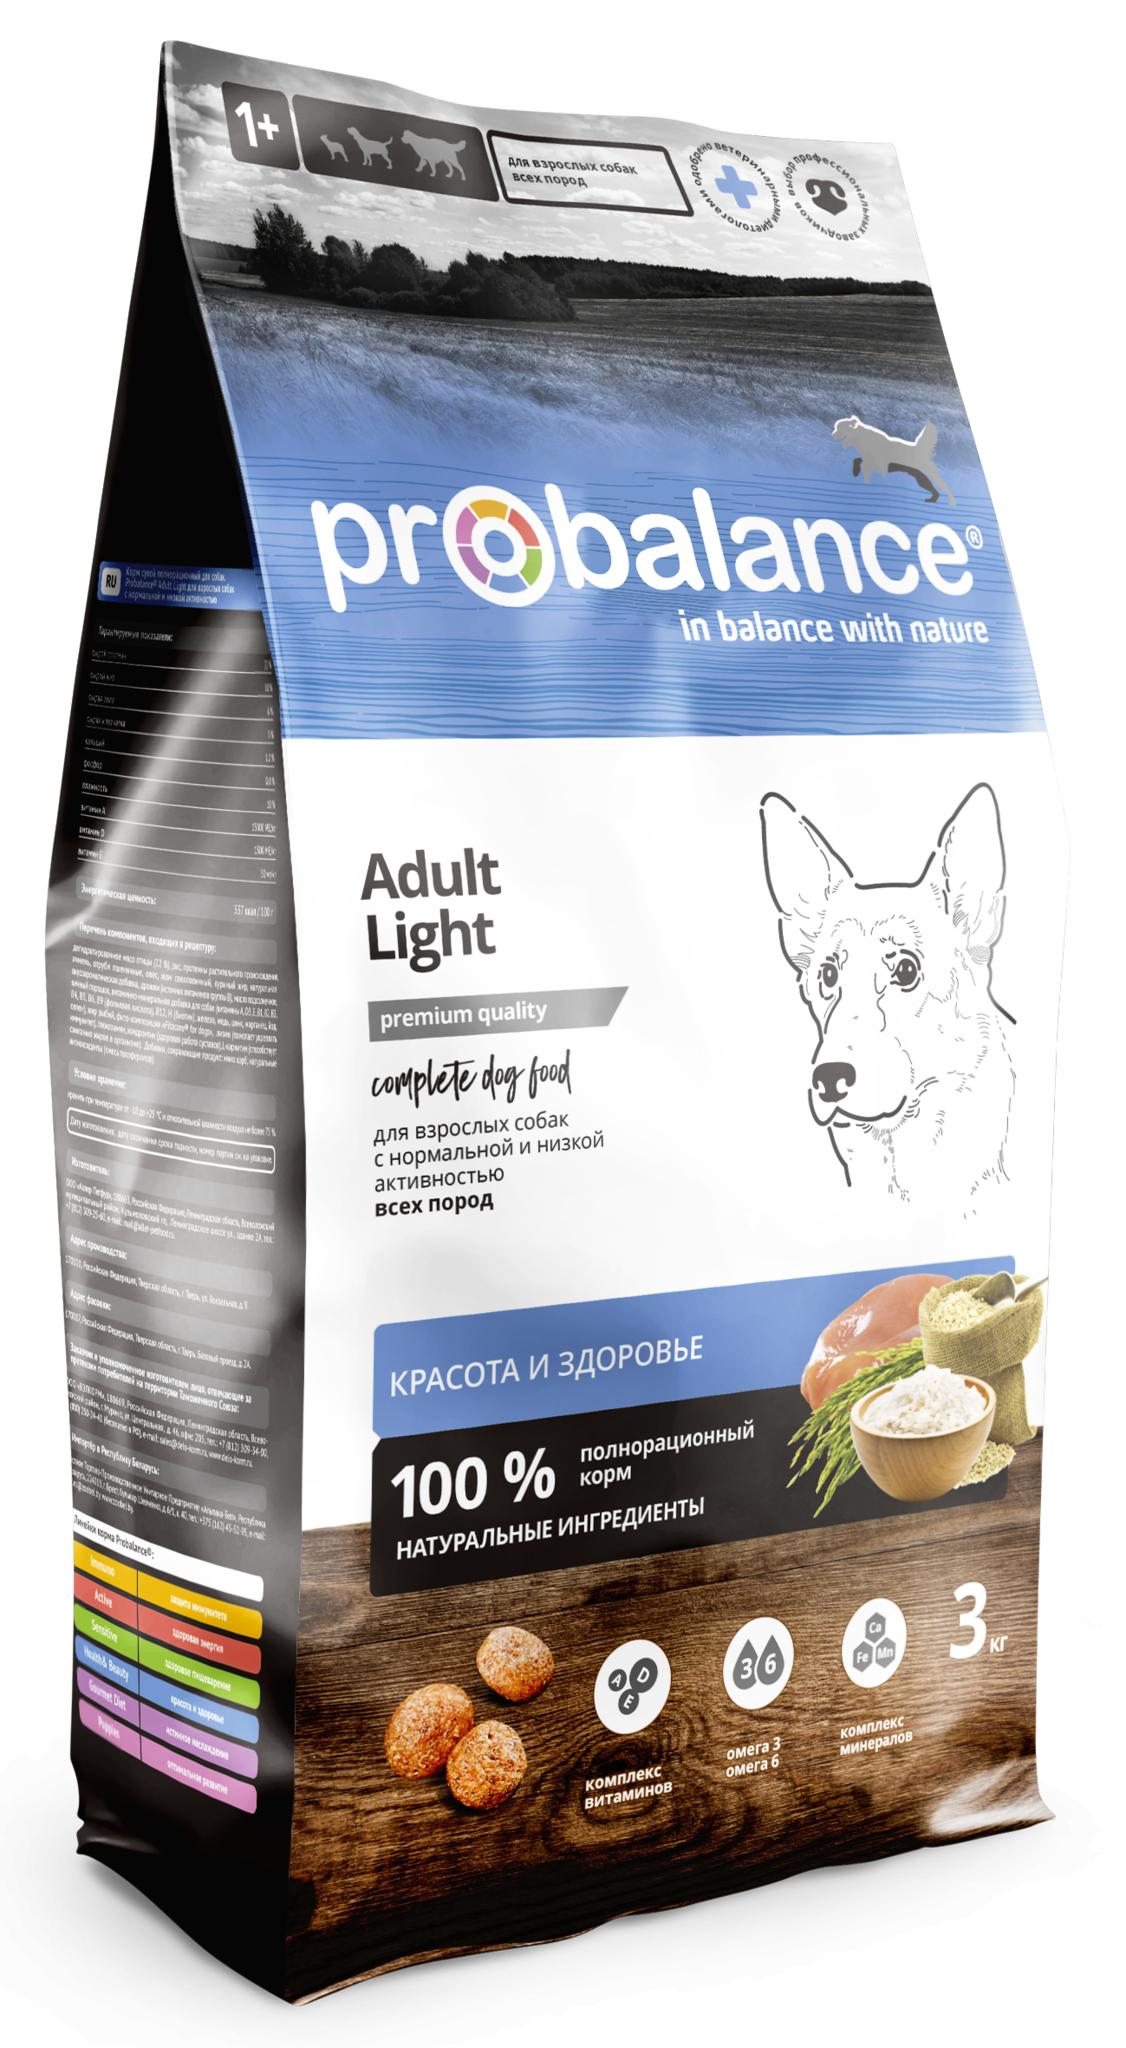 Probalance Сухой корм для собак всех пород с нормальной и низкой активностью, красота и здоровье 44 PB 261, 3 кг 